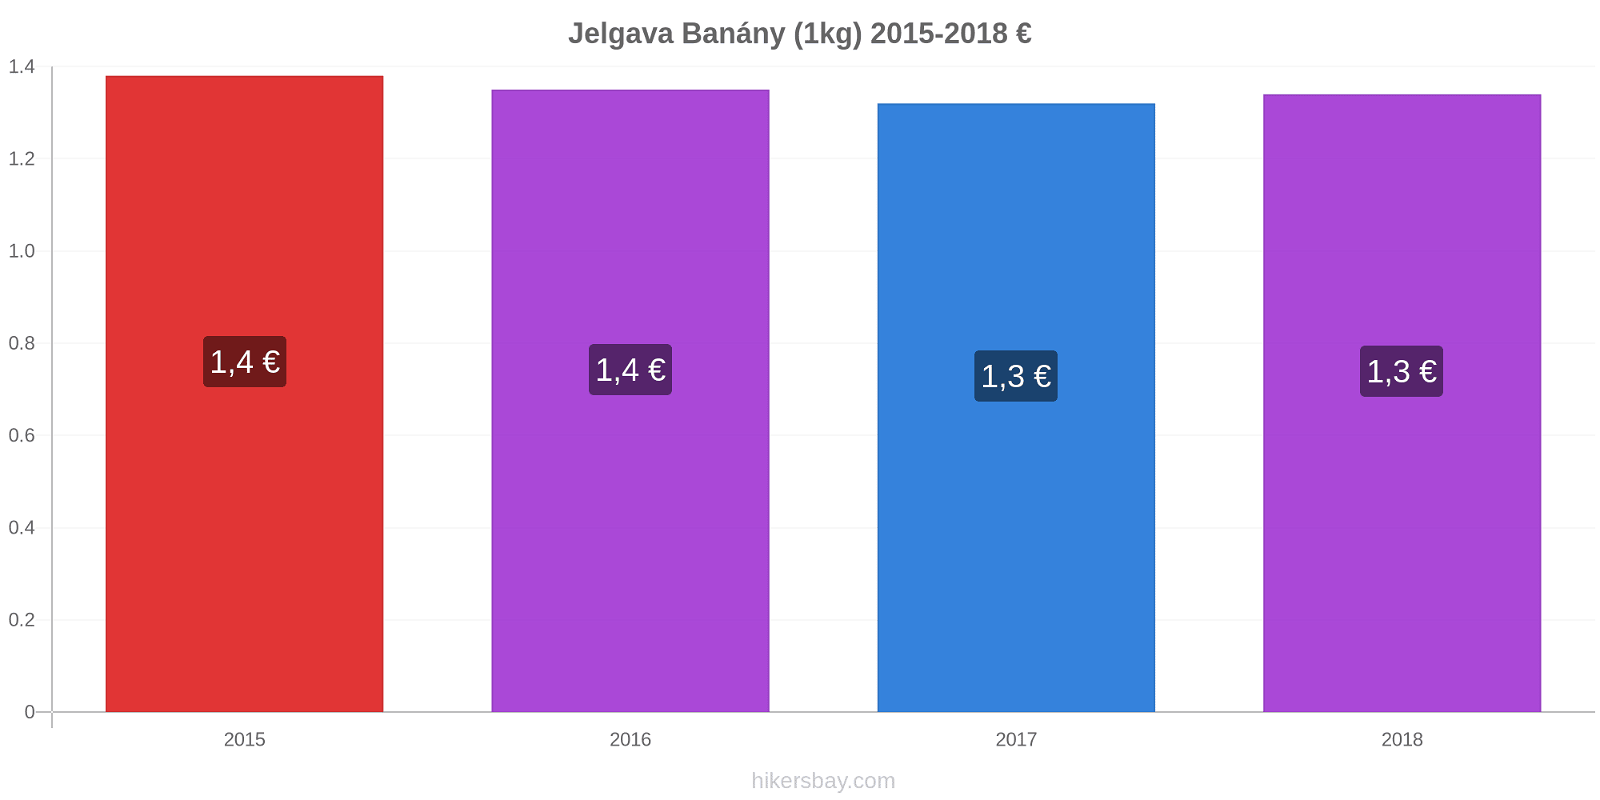 Jelgava změny cen Banány (1kg) hikersbay.com